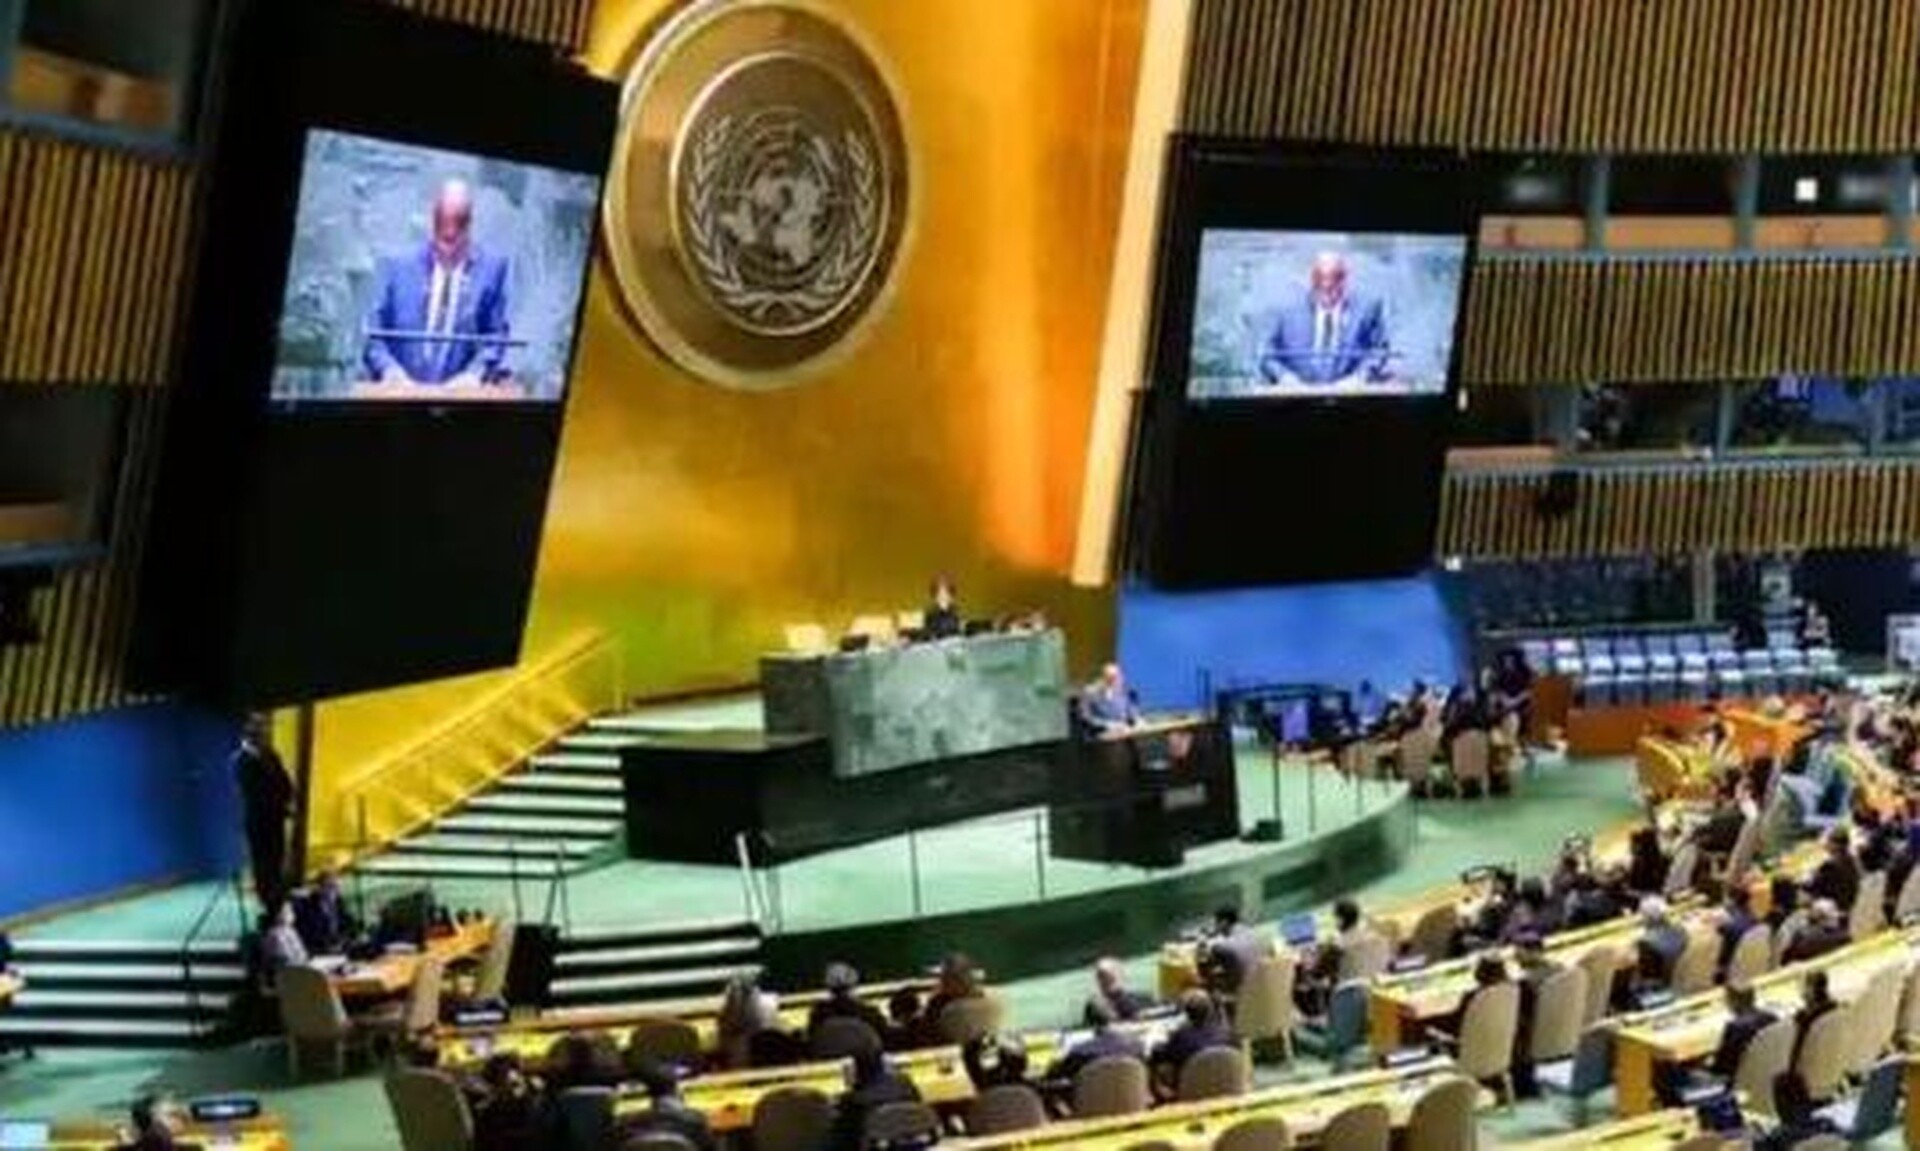 ΟΗΕ: Εγκρίθηκε το ψήφισμα της Γενικής Συνέλευσης για την επέκταση των δικαιωμάτων της Παλαιστίνης